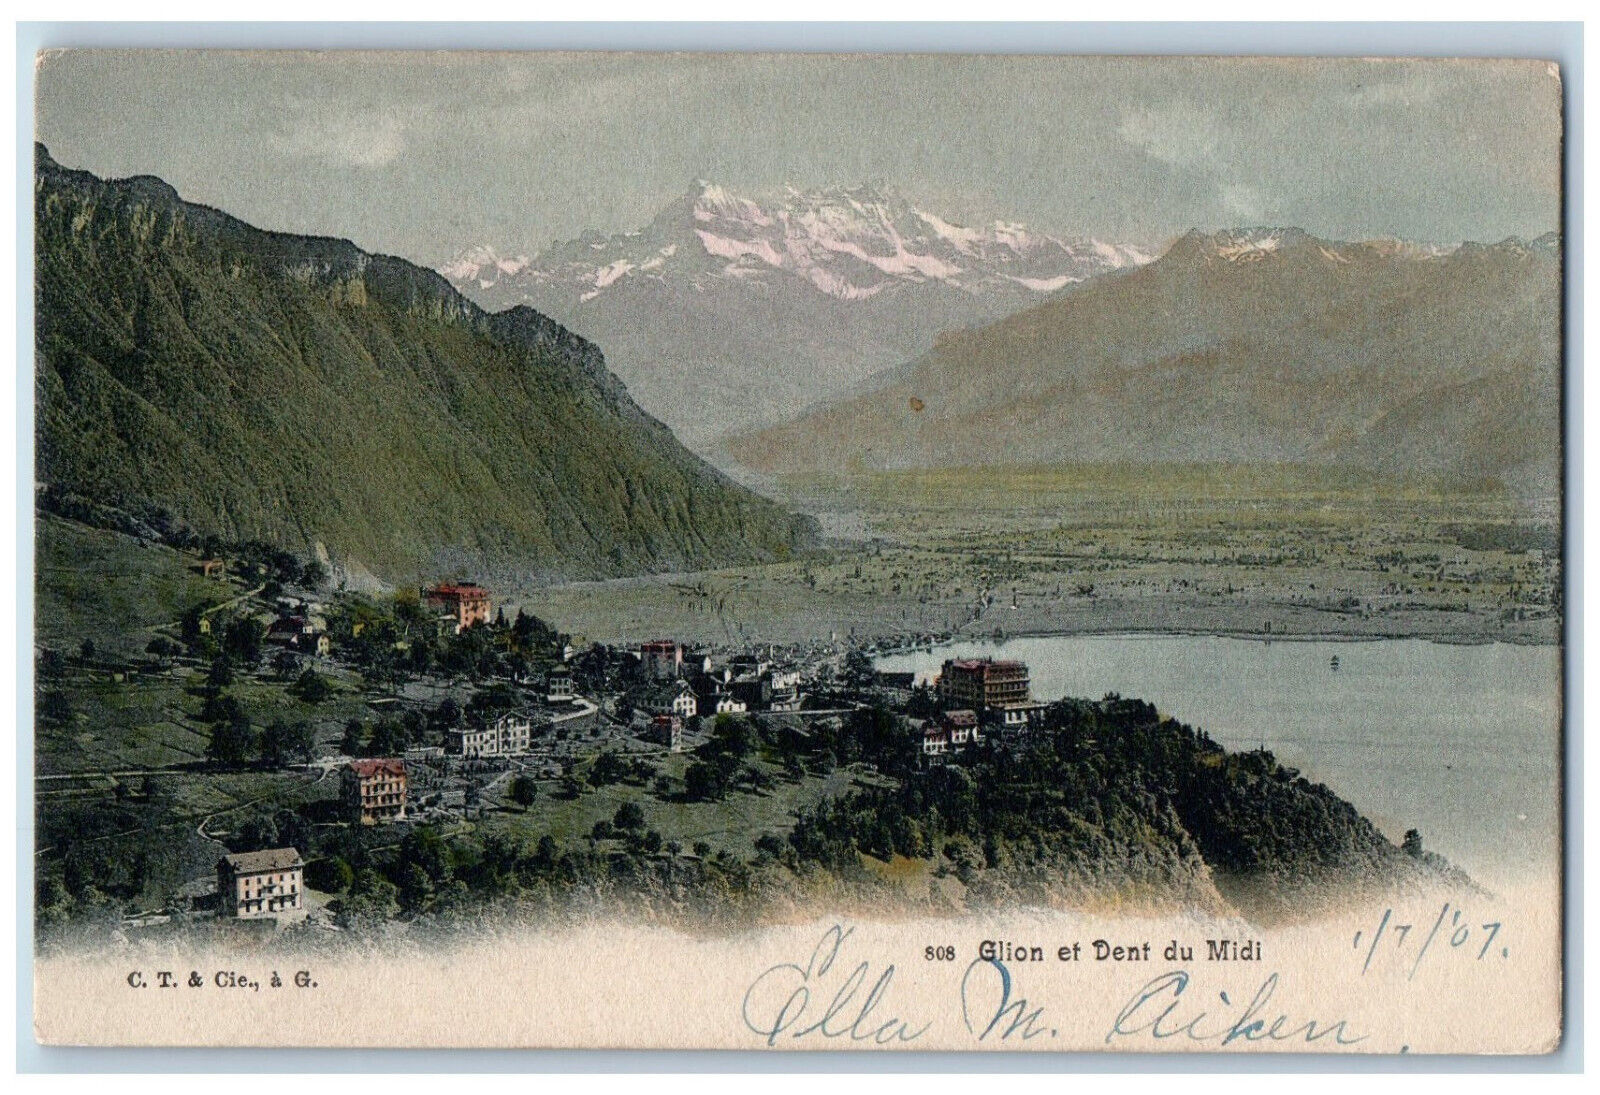 Chablais Alps Switzerland Valais Postcard Glion and Dent Du Midi c1907 Antique